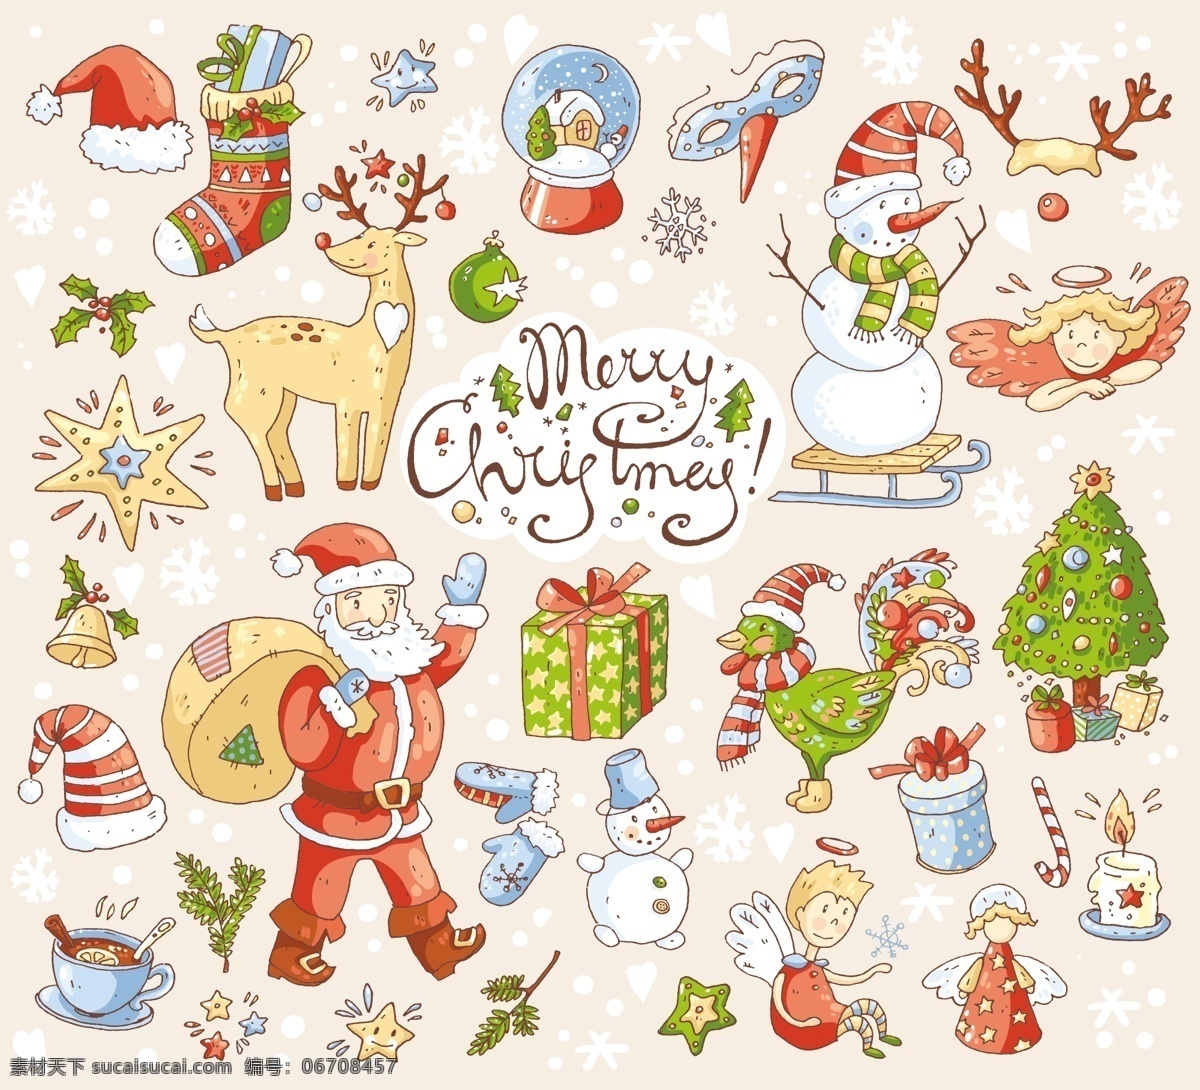 温馨 背景 卡通 圣诞节 矢量 元素 圣诞老人 帽子 雪人 卡通人物 礼物 鞋子 手套 麋鹿 圣诞树 节日背景 礼盒背景 平面设计